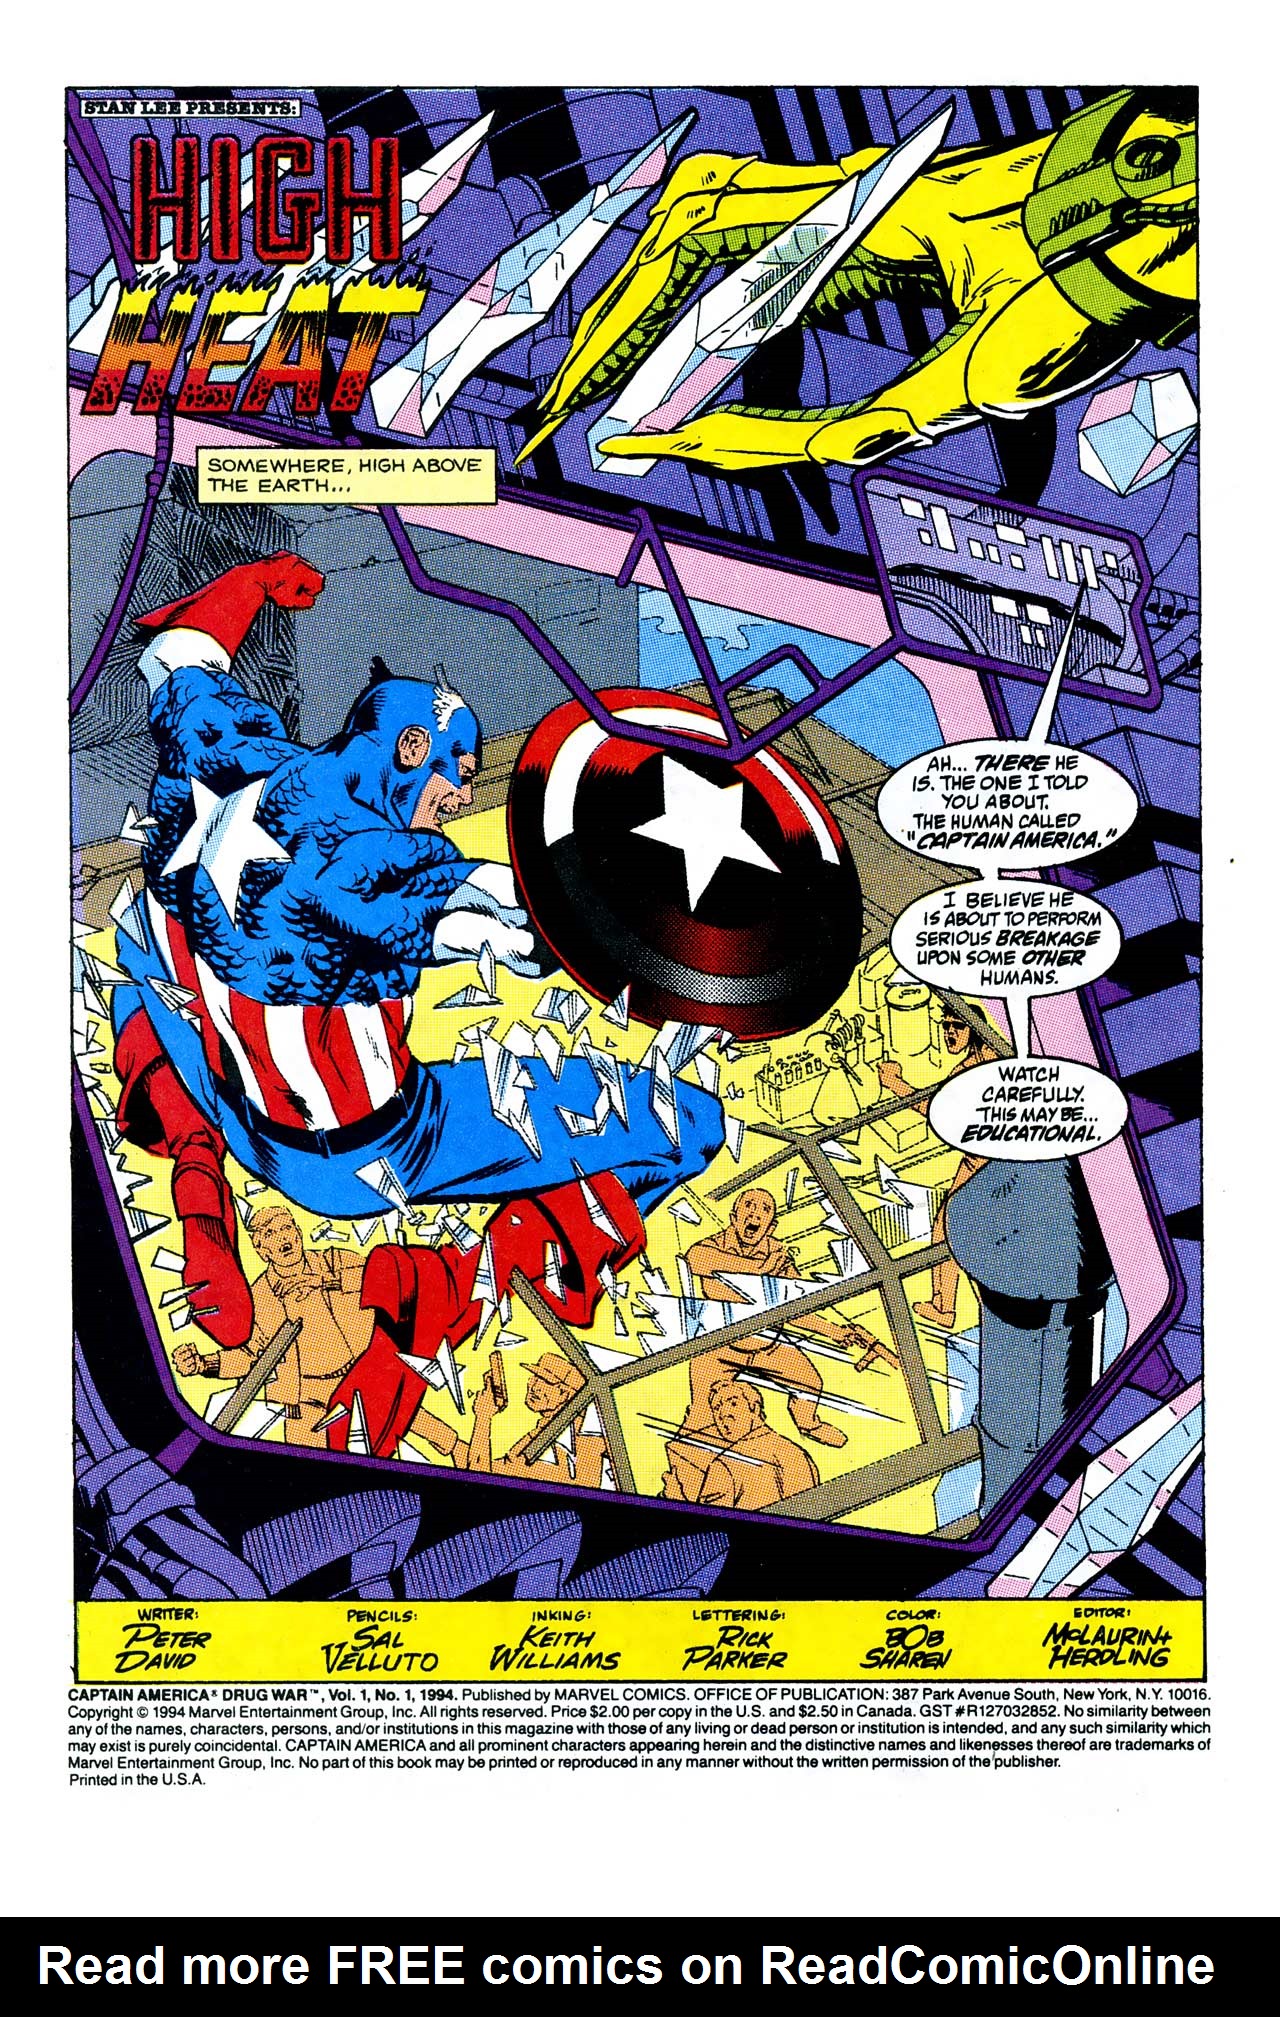 Read online Captain America: Drug War comic -  Issue # Full - 3